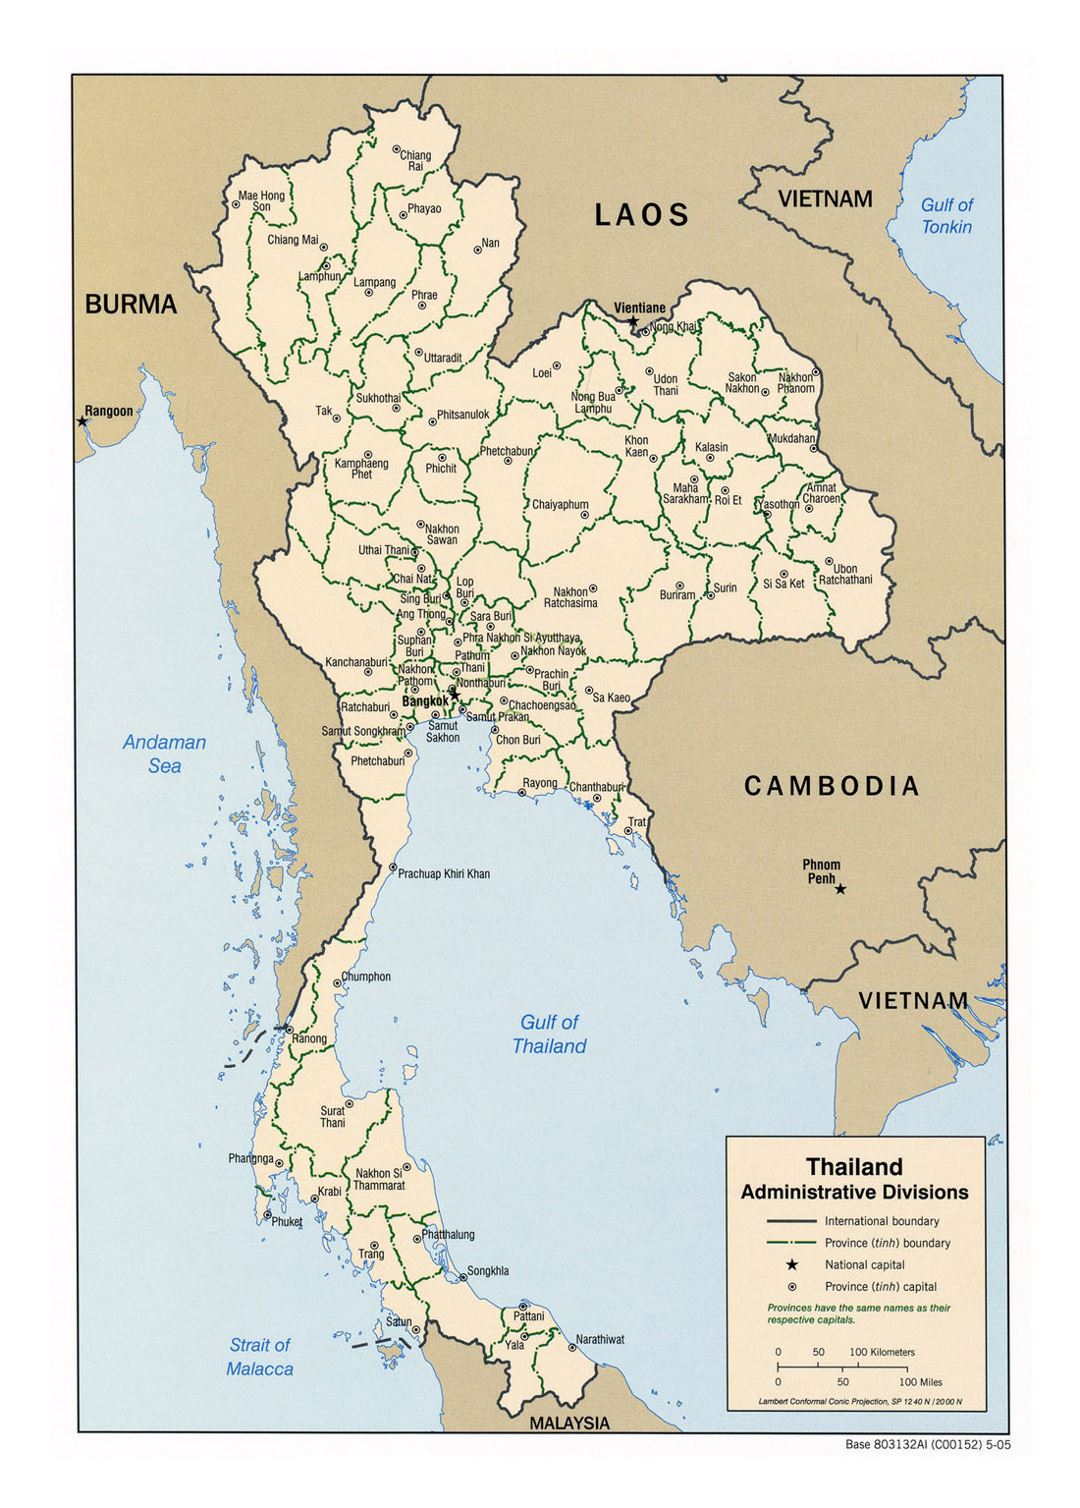 Detallado mapa de administrativas divisiones de Tailandia - 2005